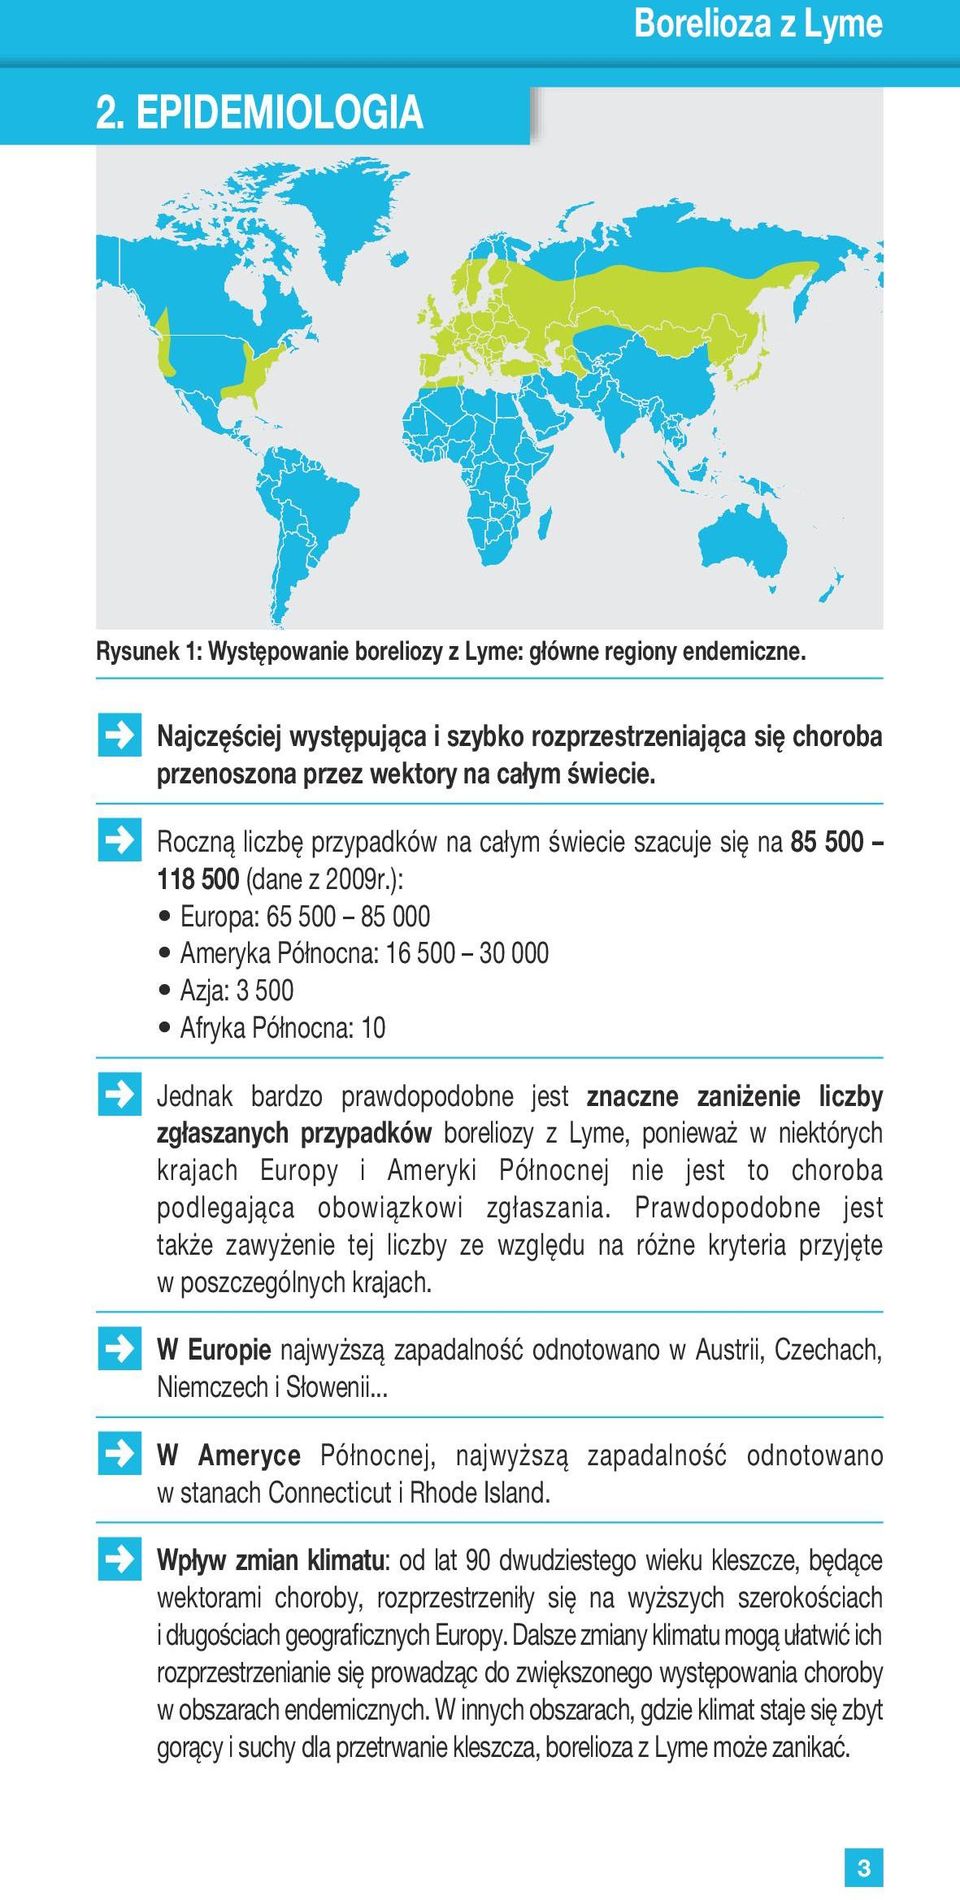 bardzo prawdopodobne jest znaczne zaniżenie liczby zgłaszanych przypadków boreliozy z Lyme, ponieważ w niektórych krajach Europy i Ameryki Północnej nie jest to choroba podlegająca obowiązkowi